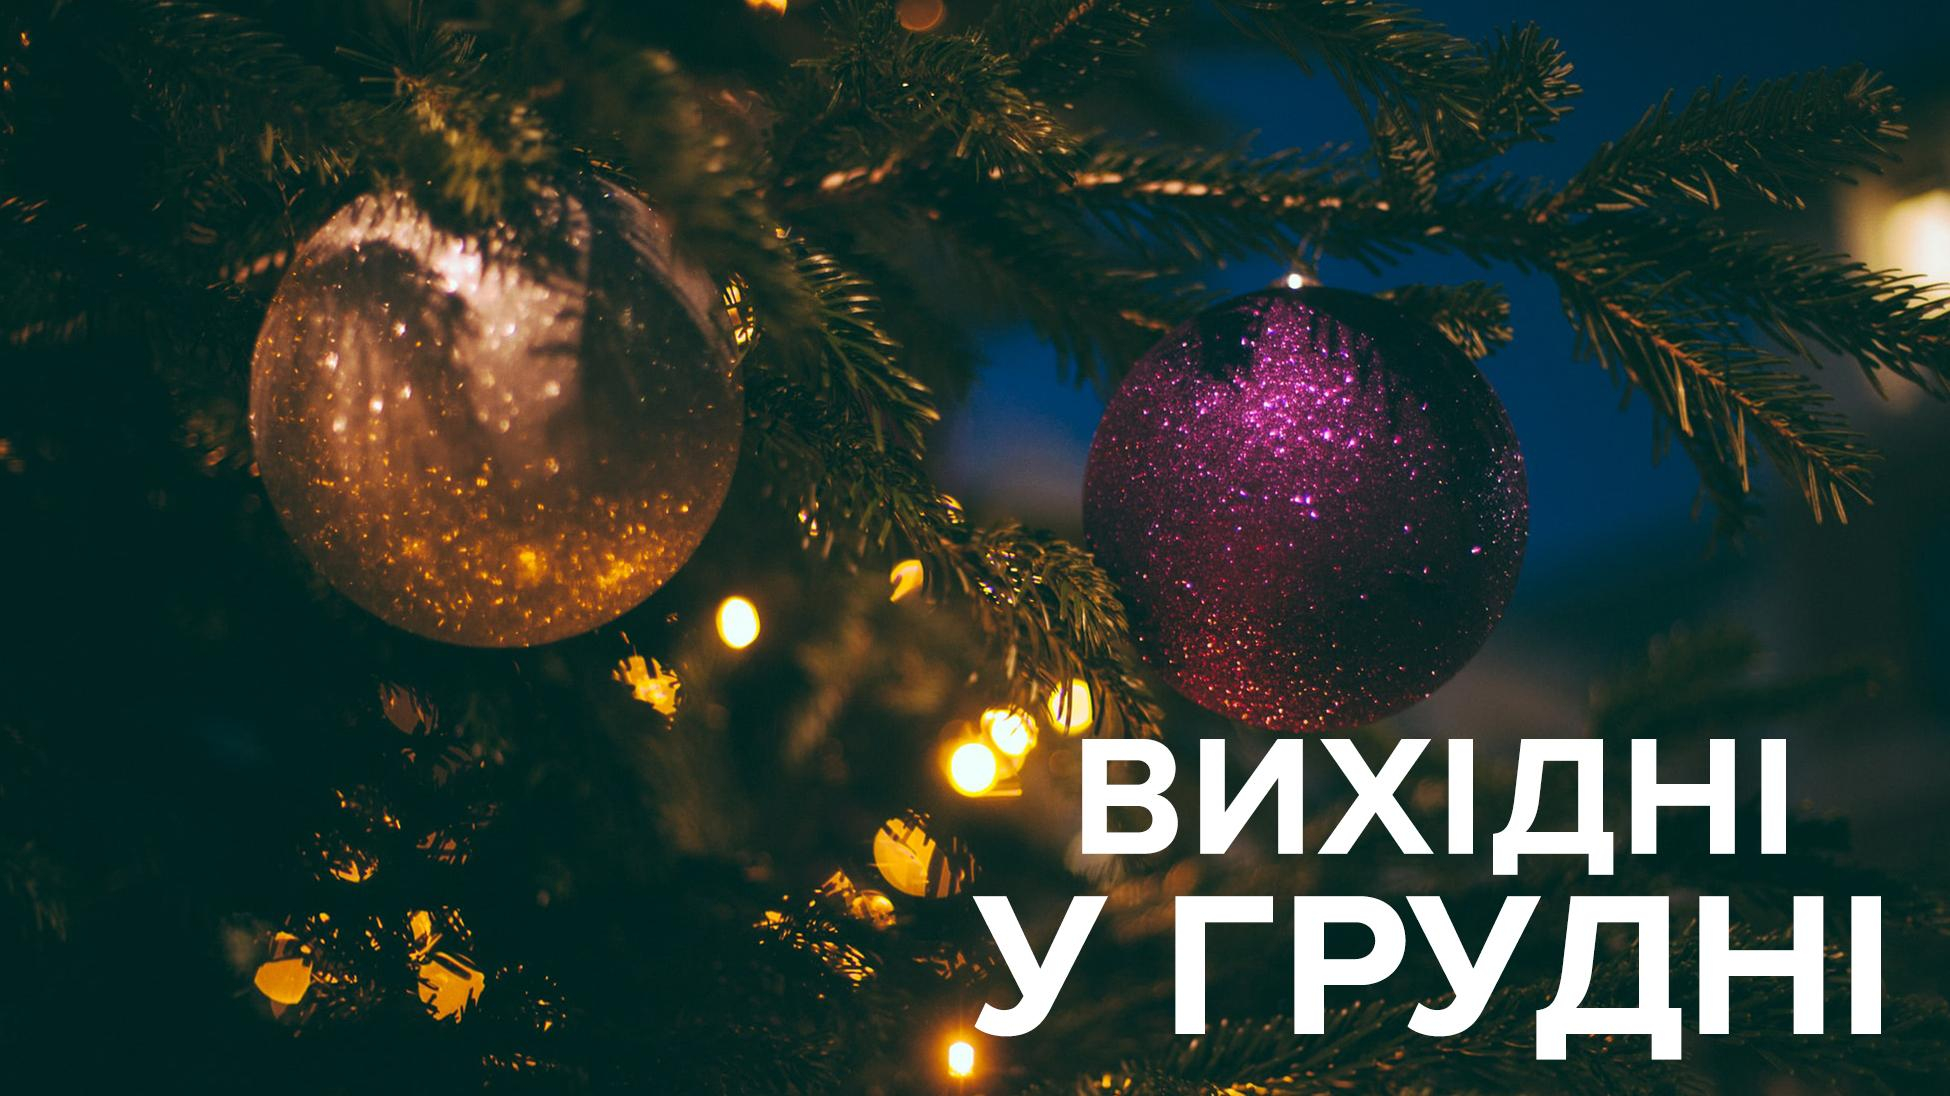 Вихідні у грудні 2019 Україна – свята і вихідні дні